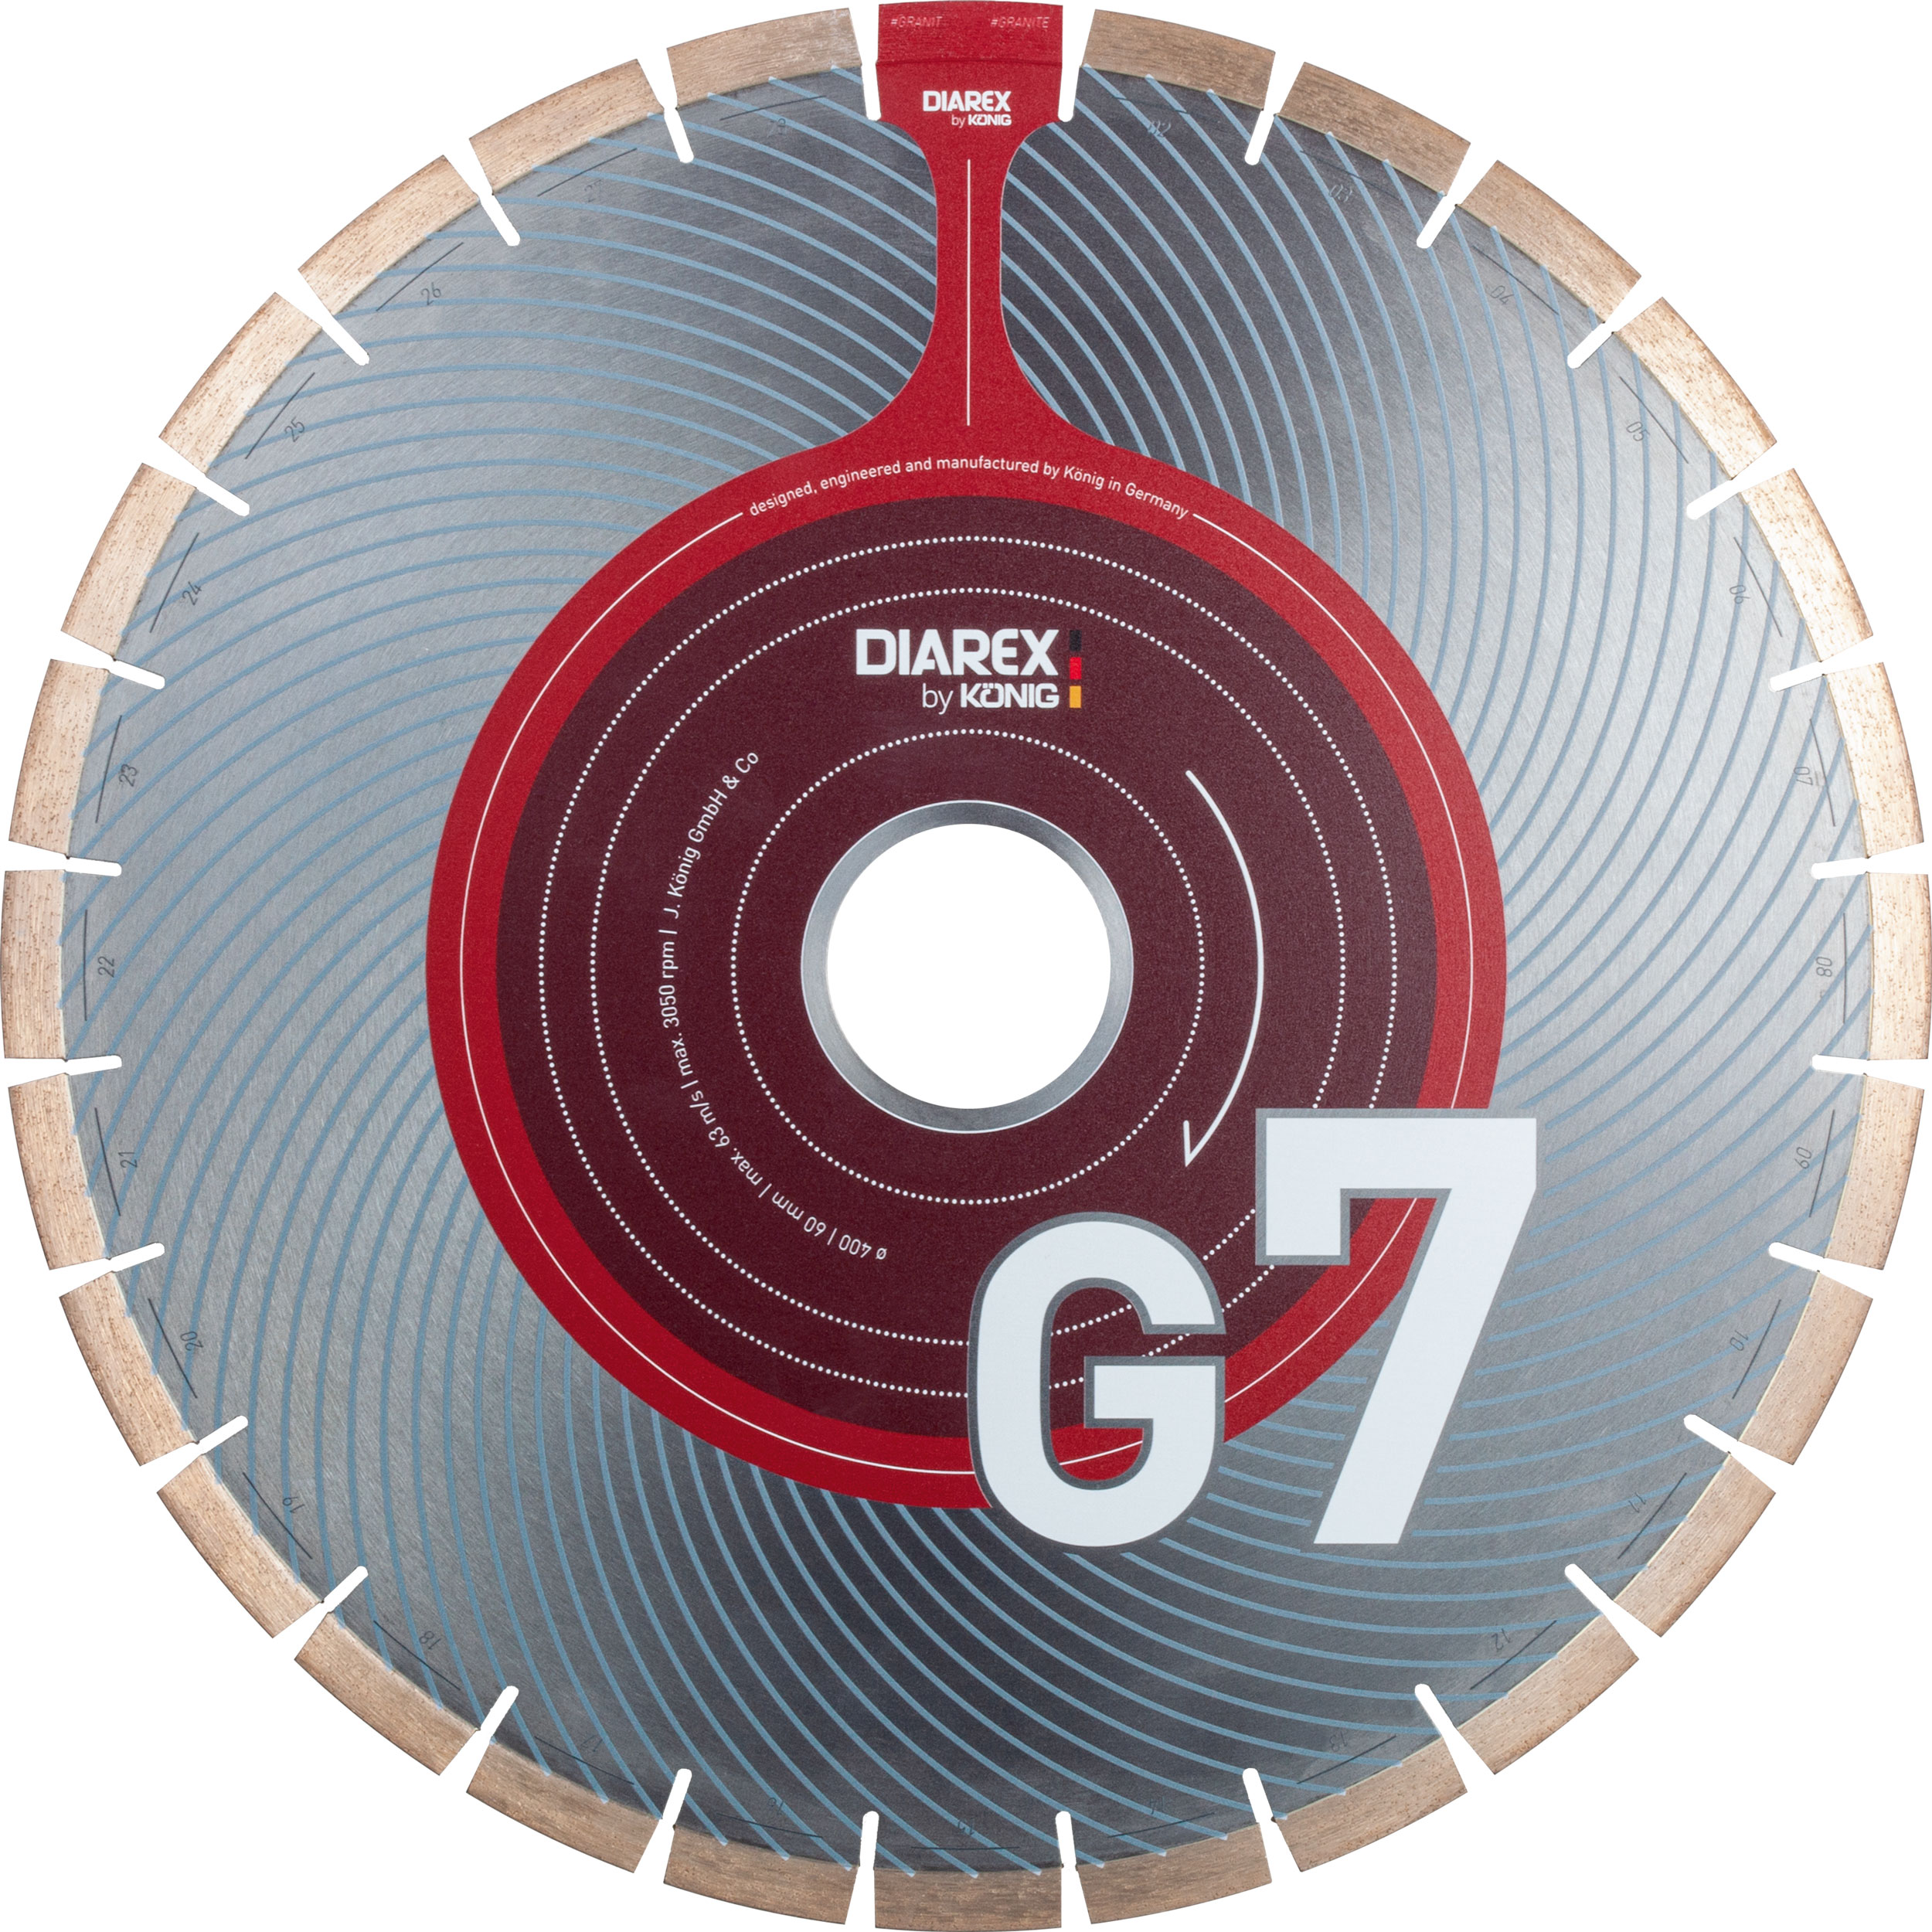 DIAREX Trennscheibe G7 ø 450 mm | Bohrung 60 mm